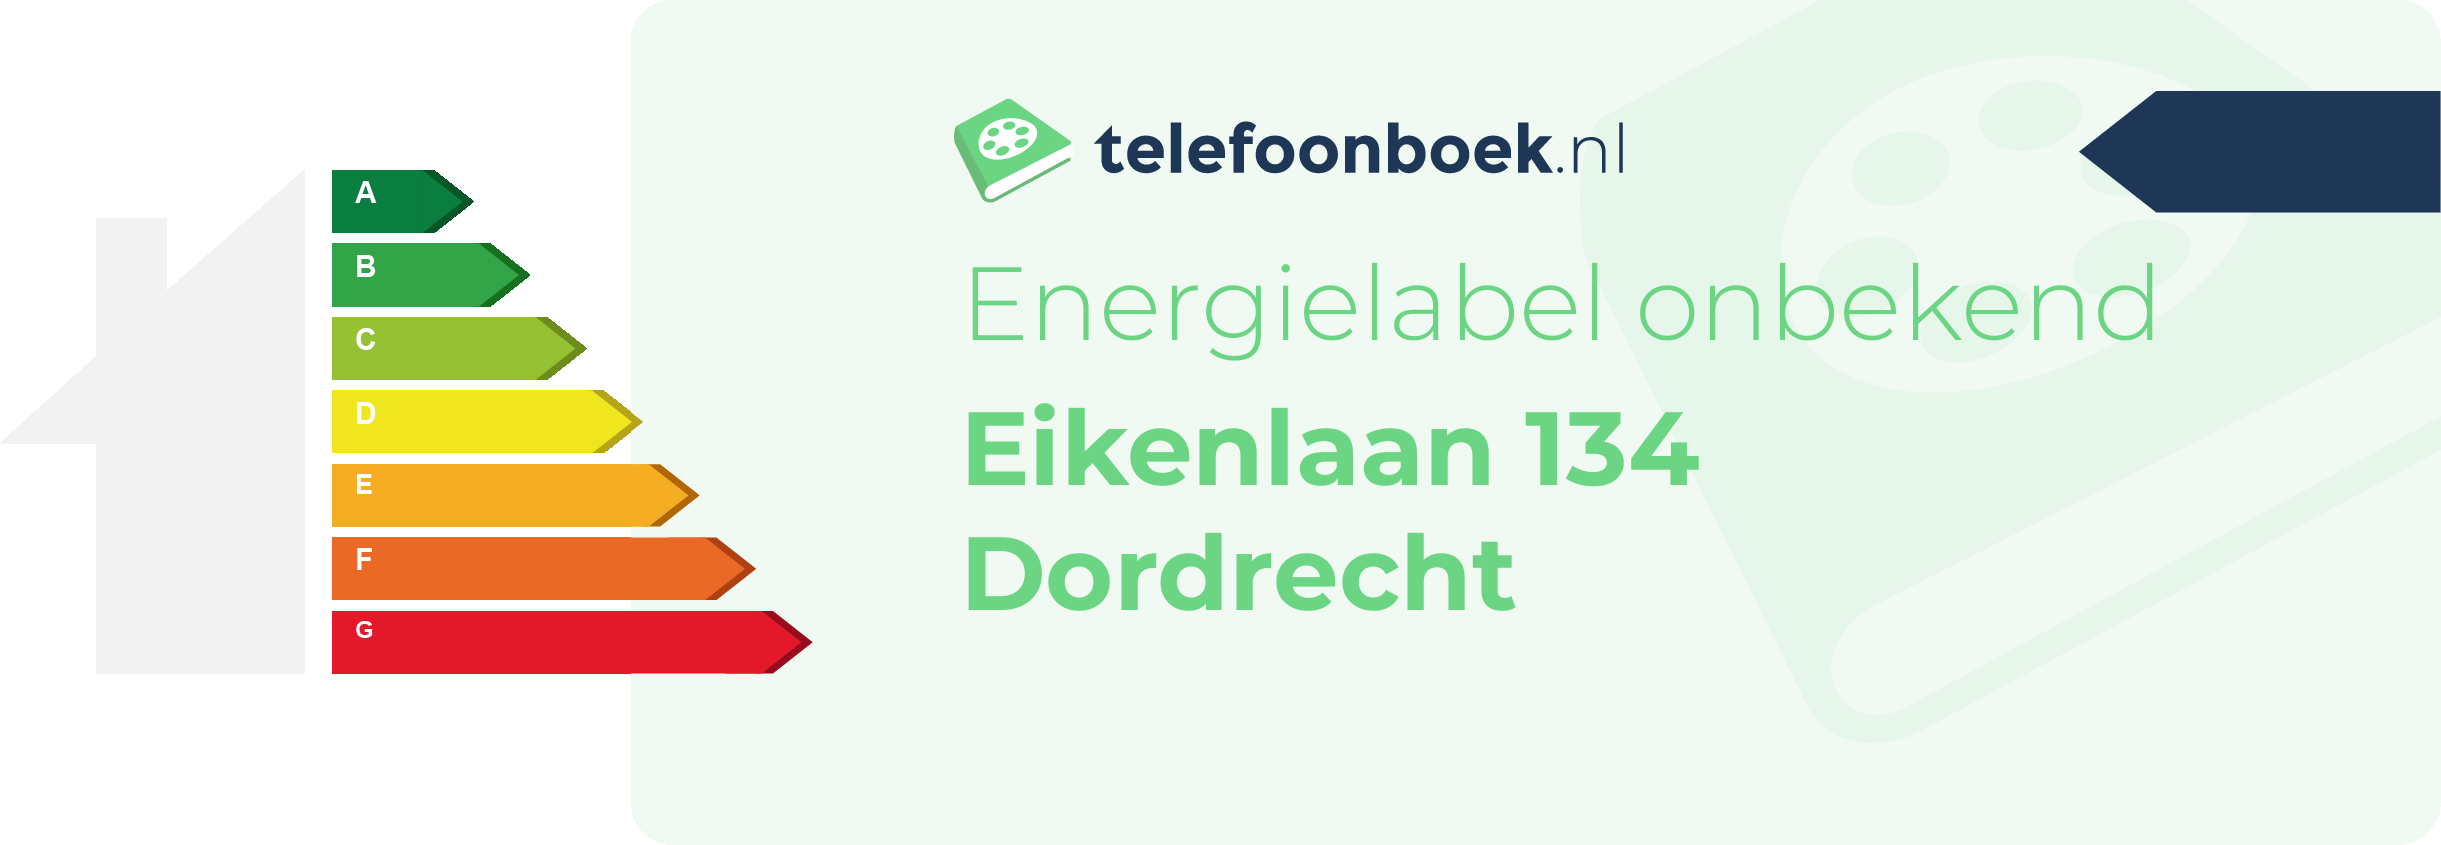 Energielabel Eikenlaan 134 Dordrecht